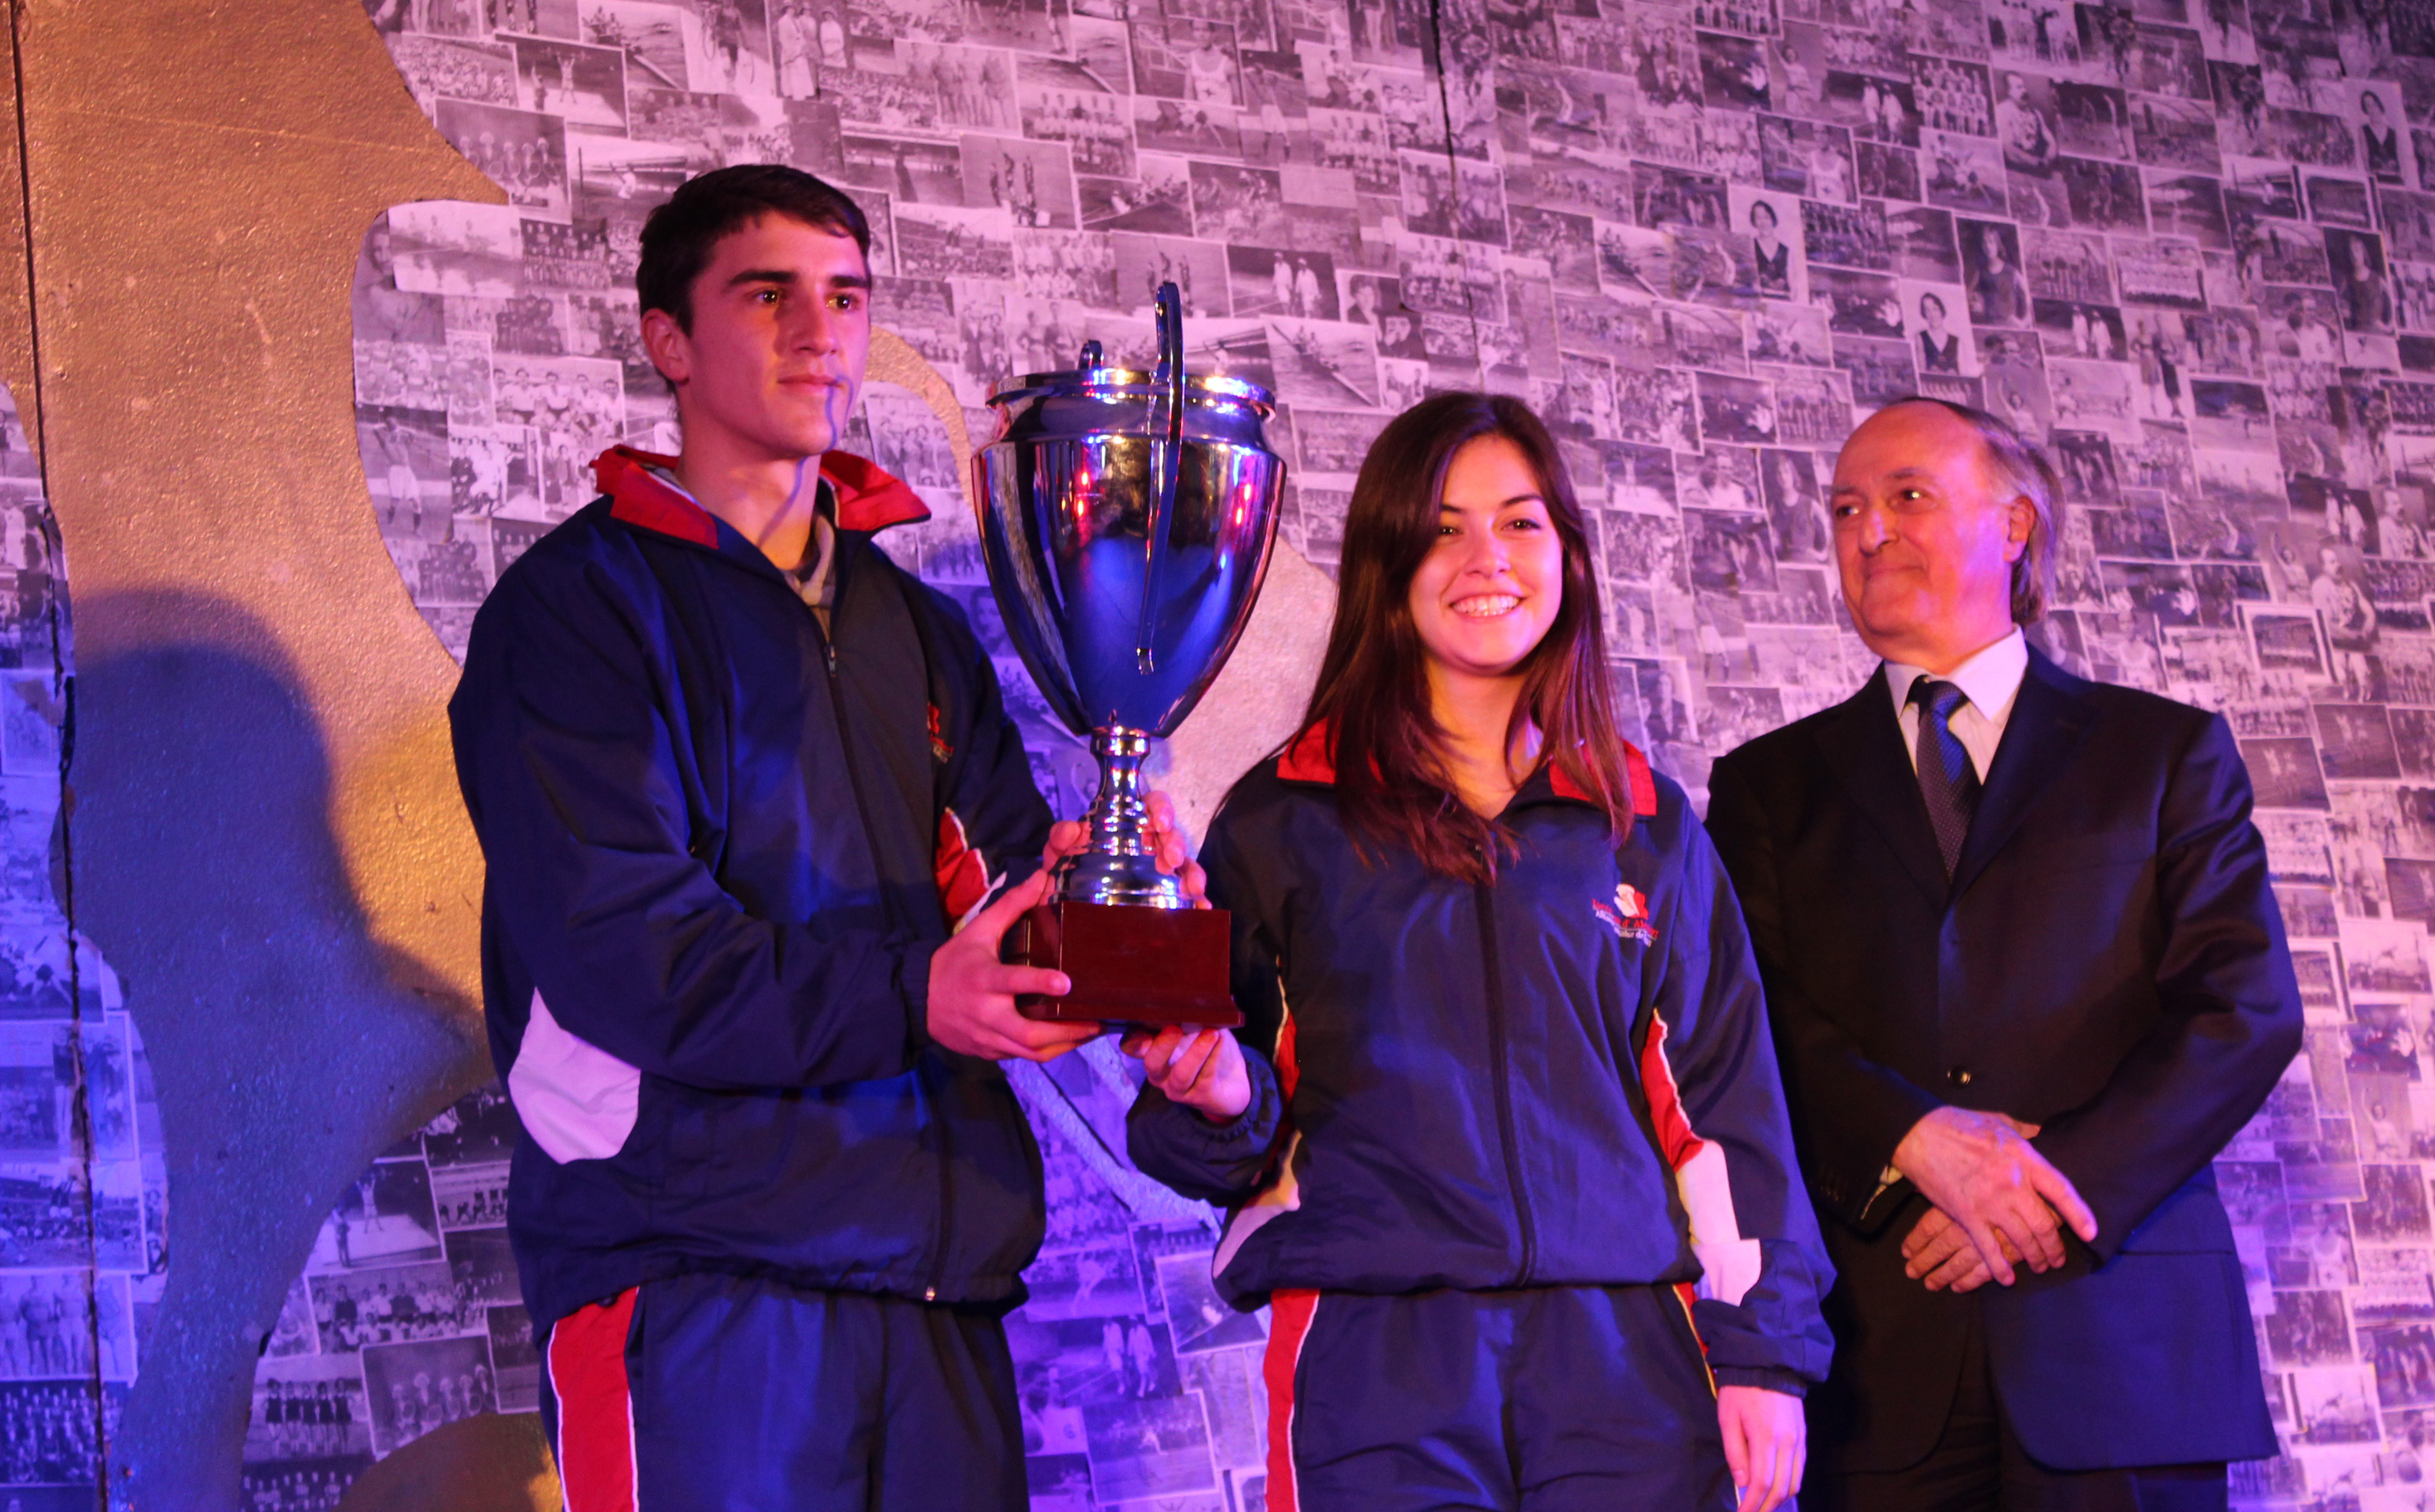 Nuestros alumnos deportistas, Rocío y Diego, recibieron de parte del Presidente de las Alianzas Francesas de Chile la Copa Fair Play.